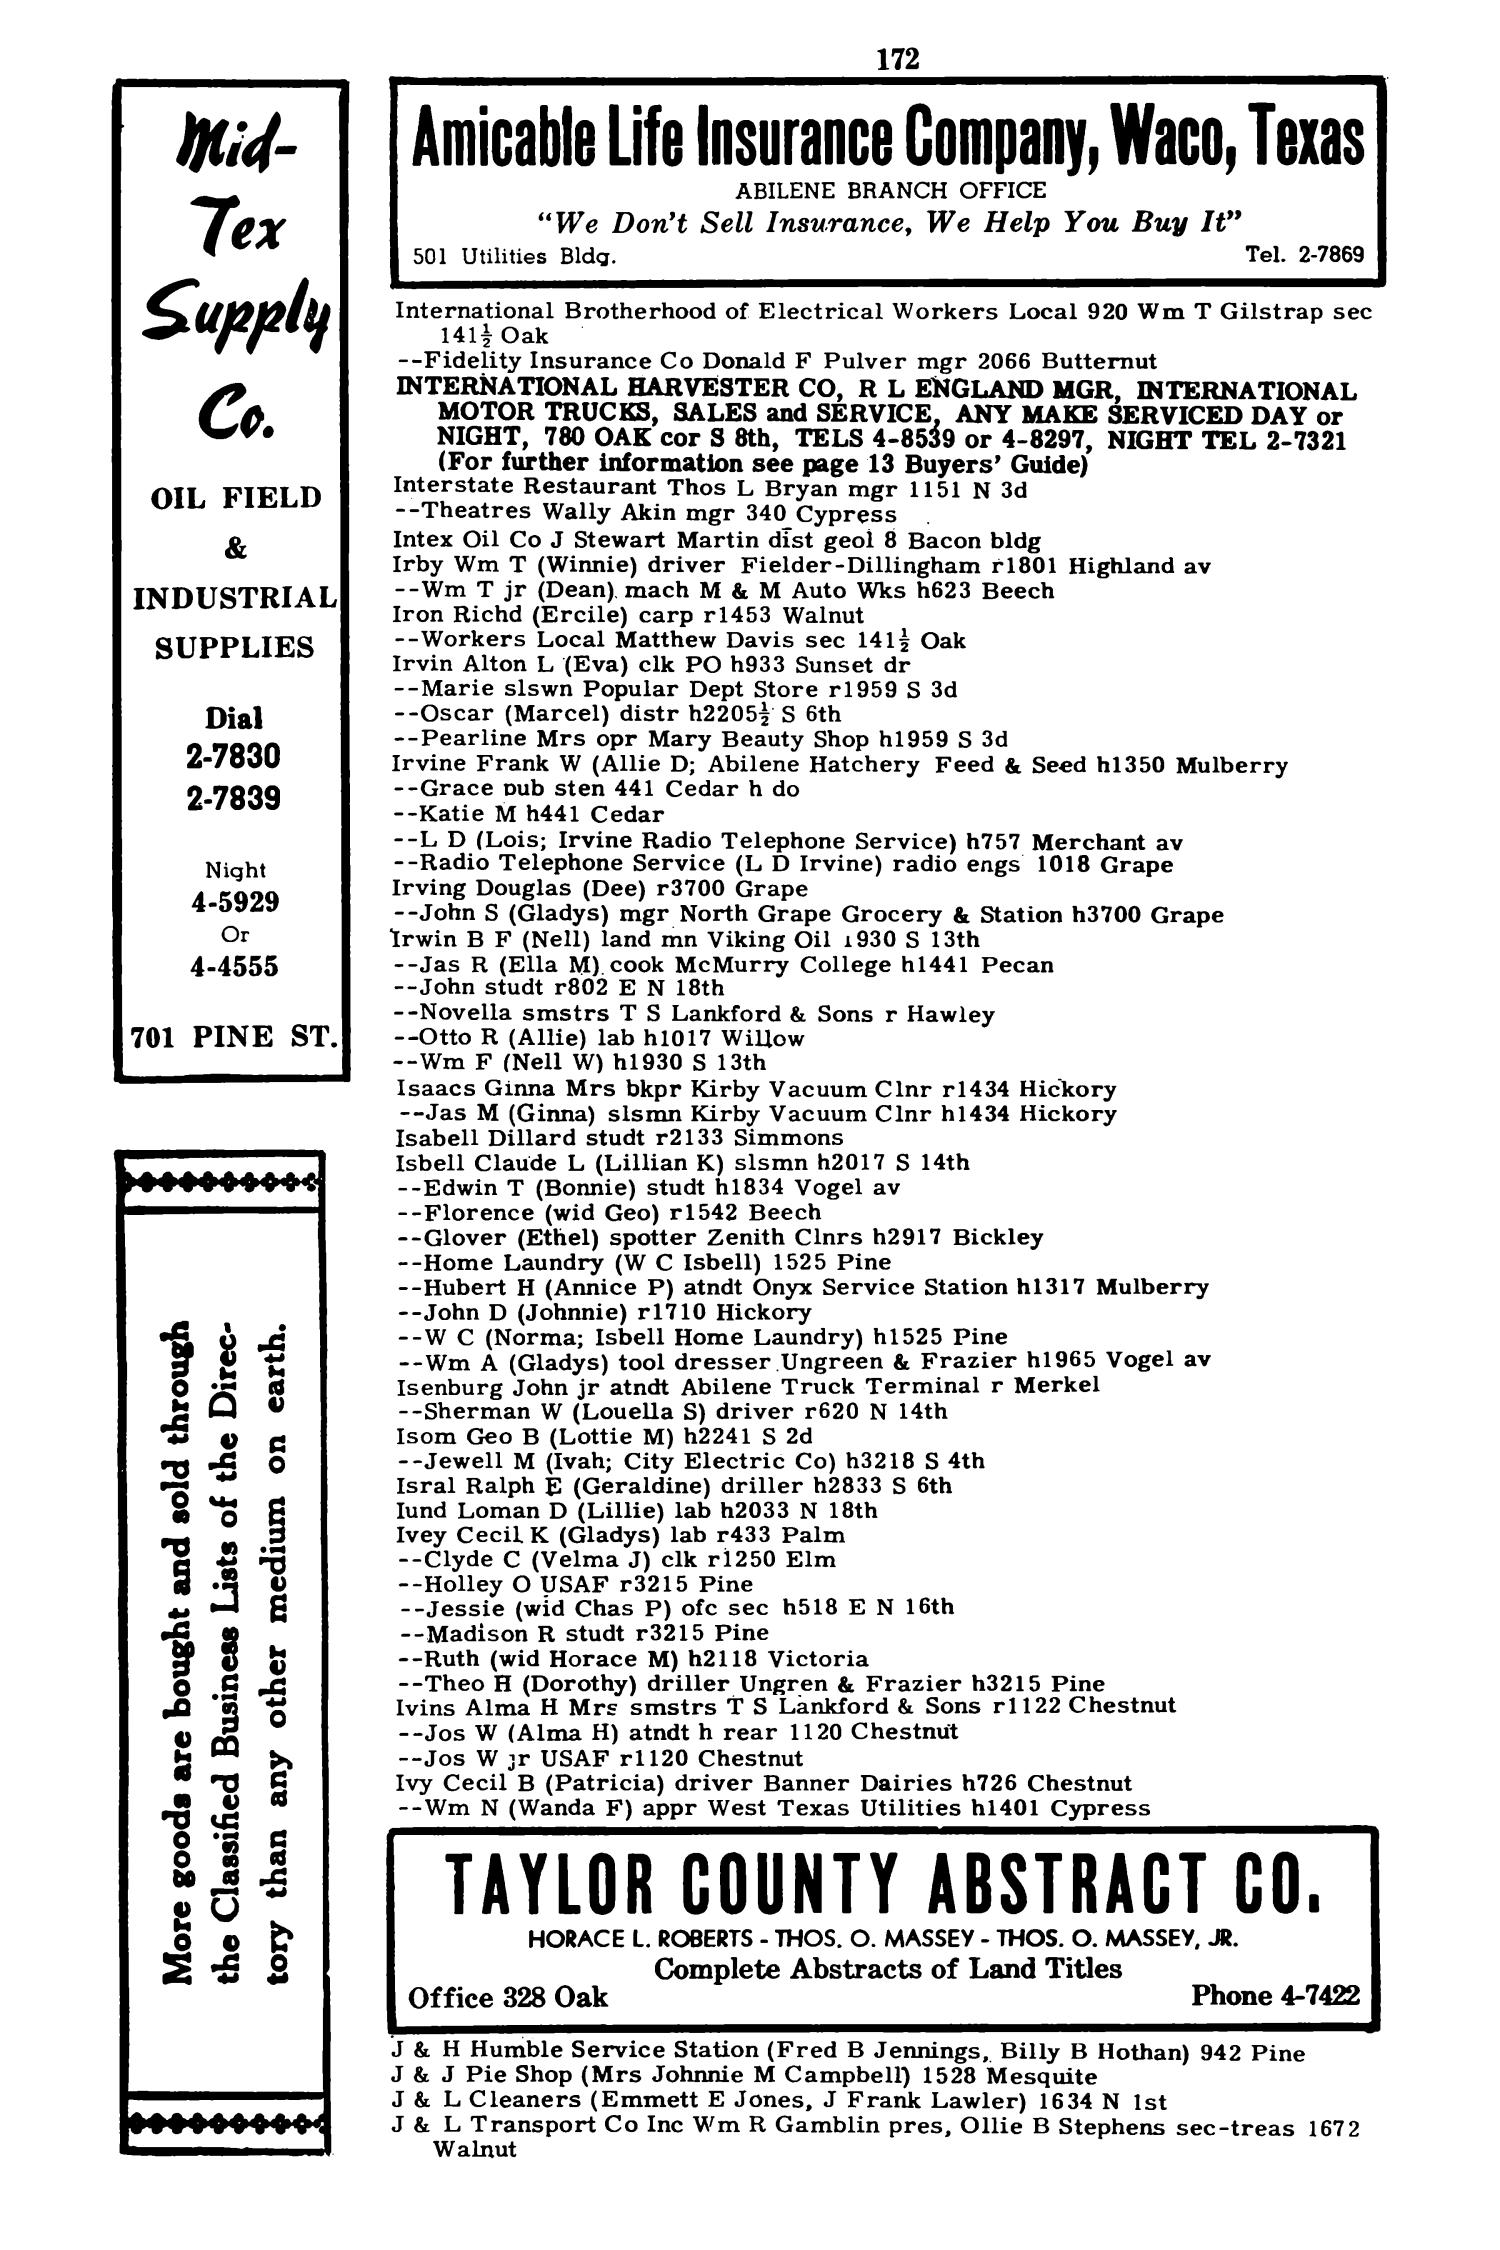 Worley's Abilene (Taylor County, Texas) City Directory, 1951
                                                
                                                    172
                                                